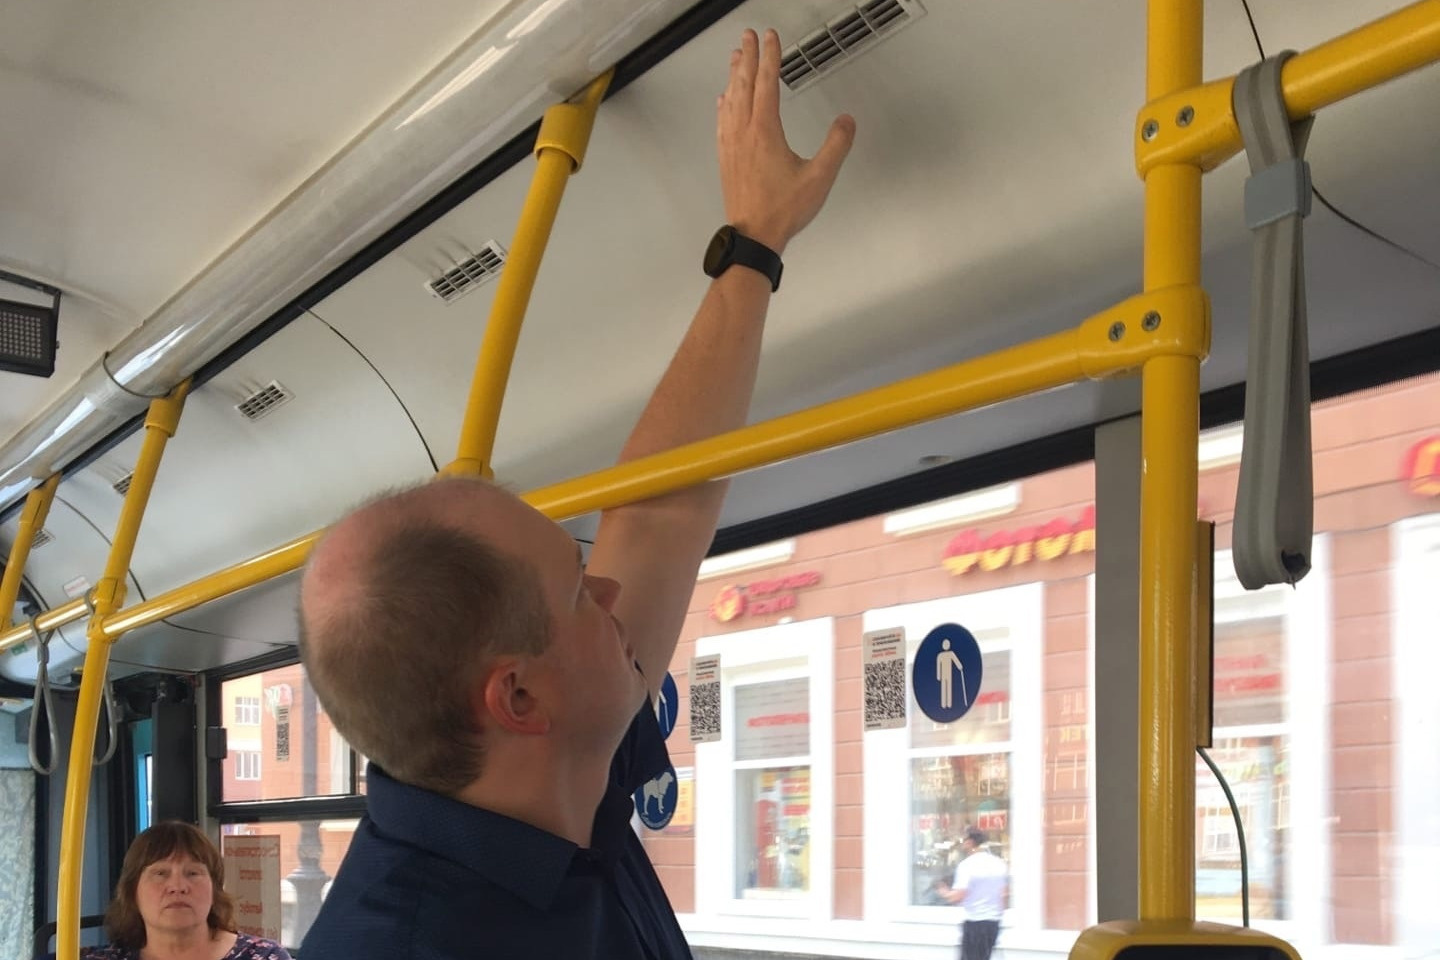 Анатолий Путин проверяет наличие холодного воздуха из кондиционера в автобусах